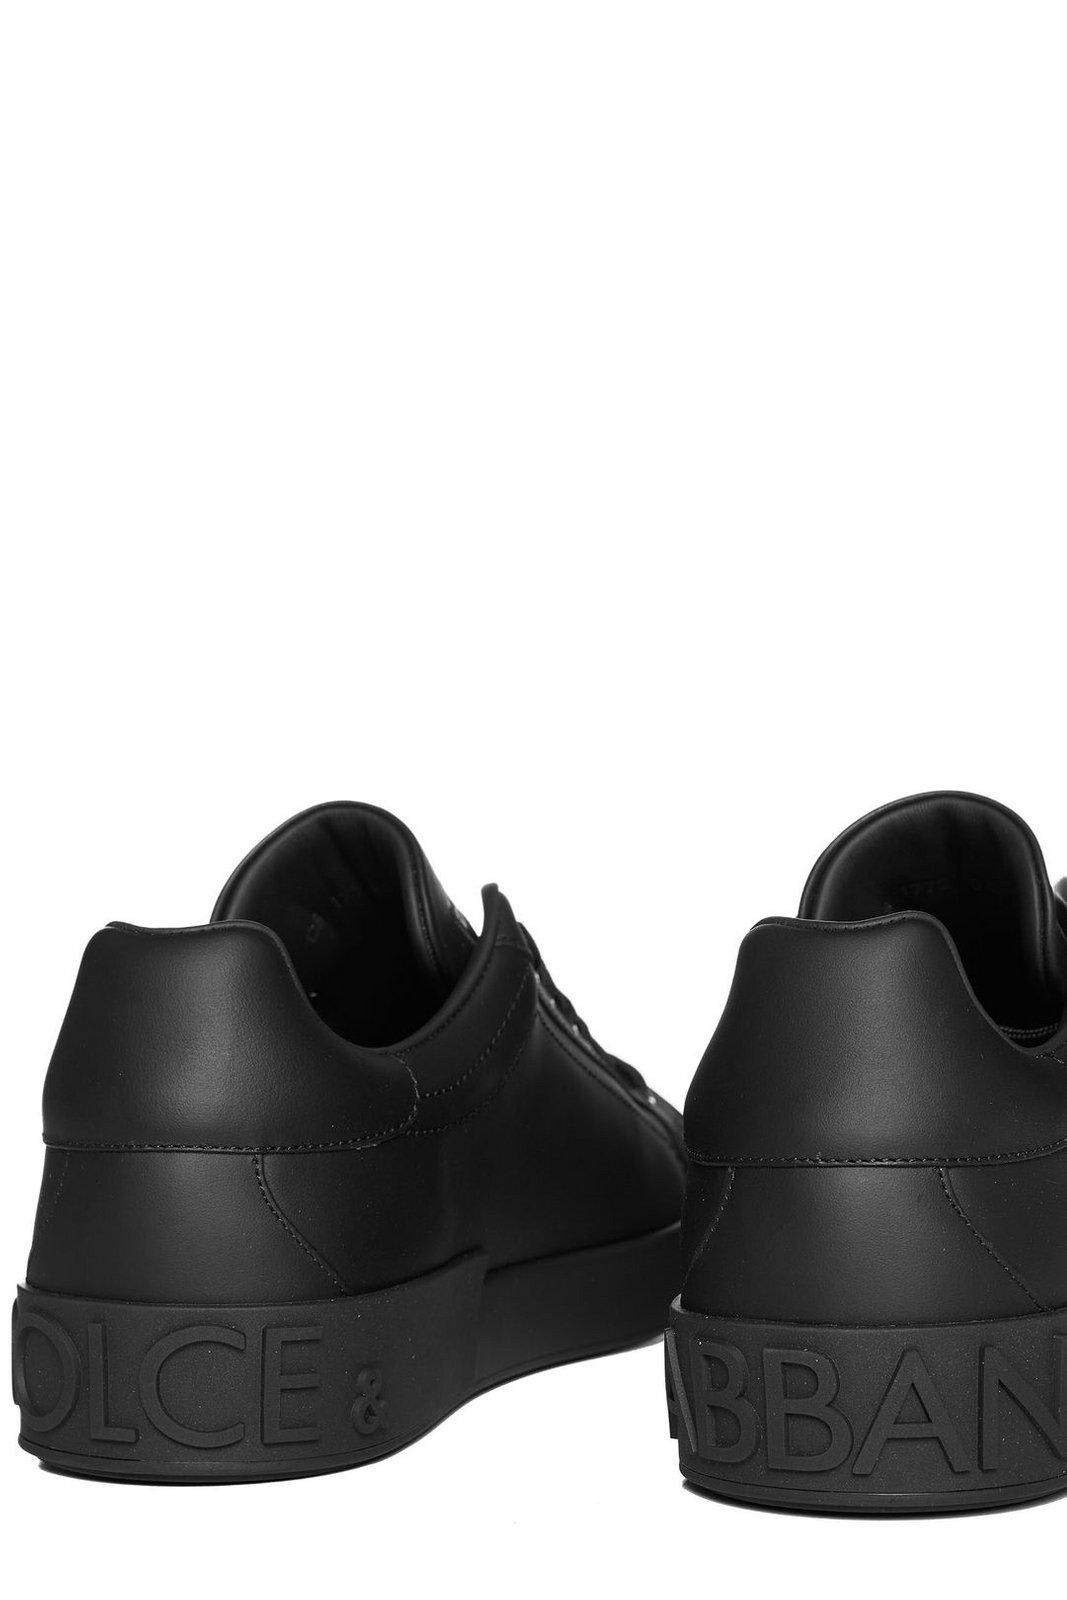 Shop Dolce & Gabbana Portofino Lace-up Sneakers In Black